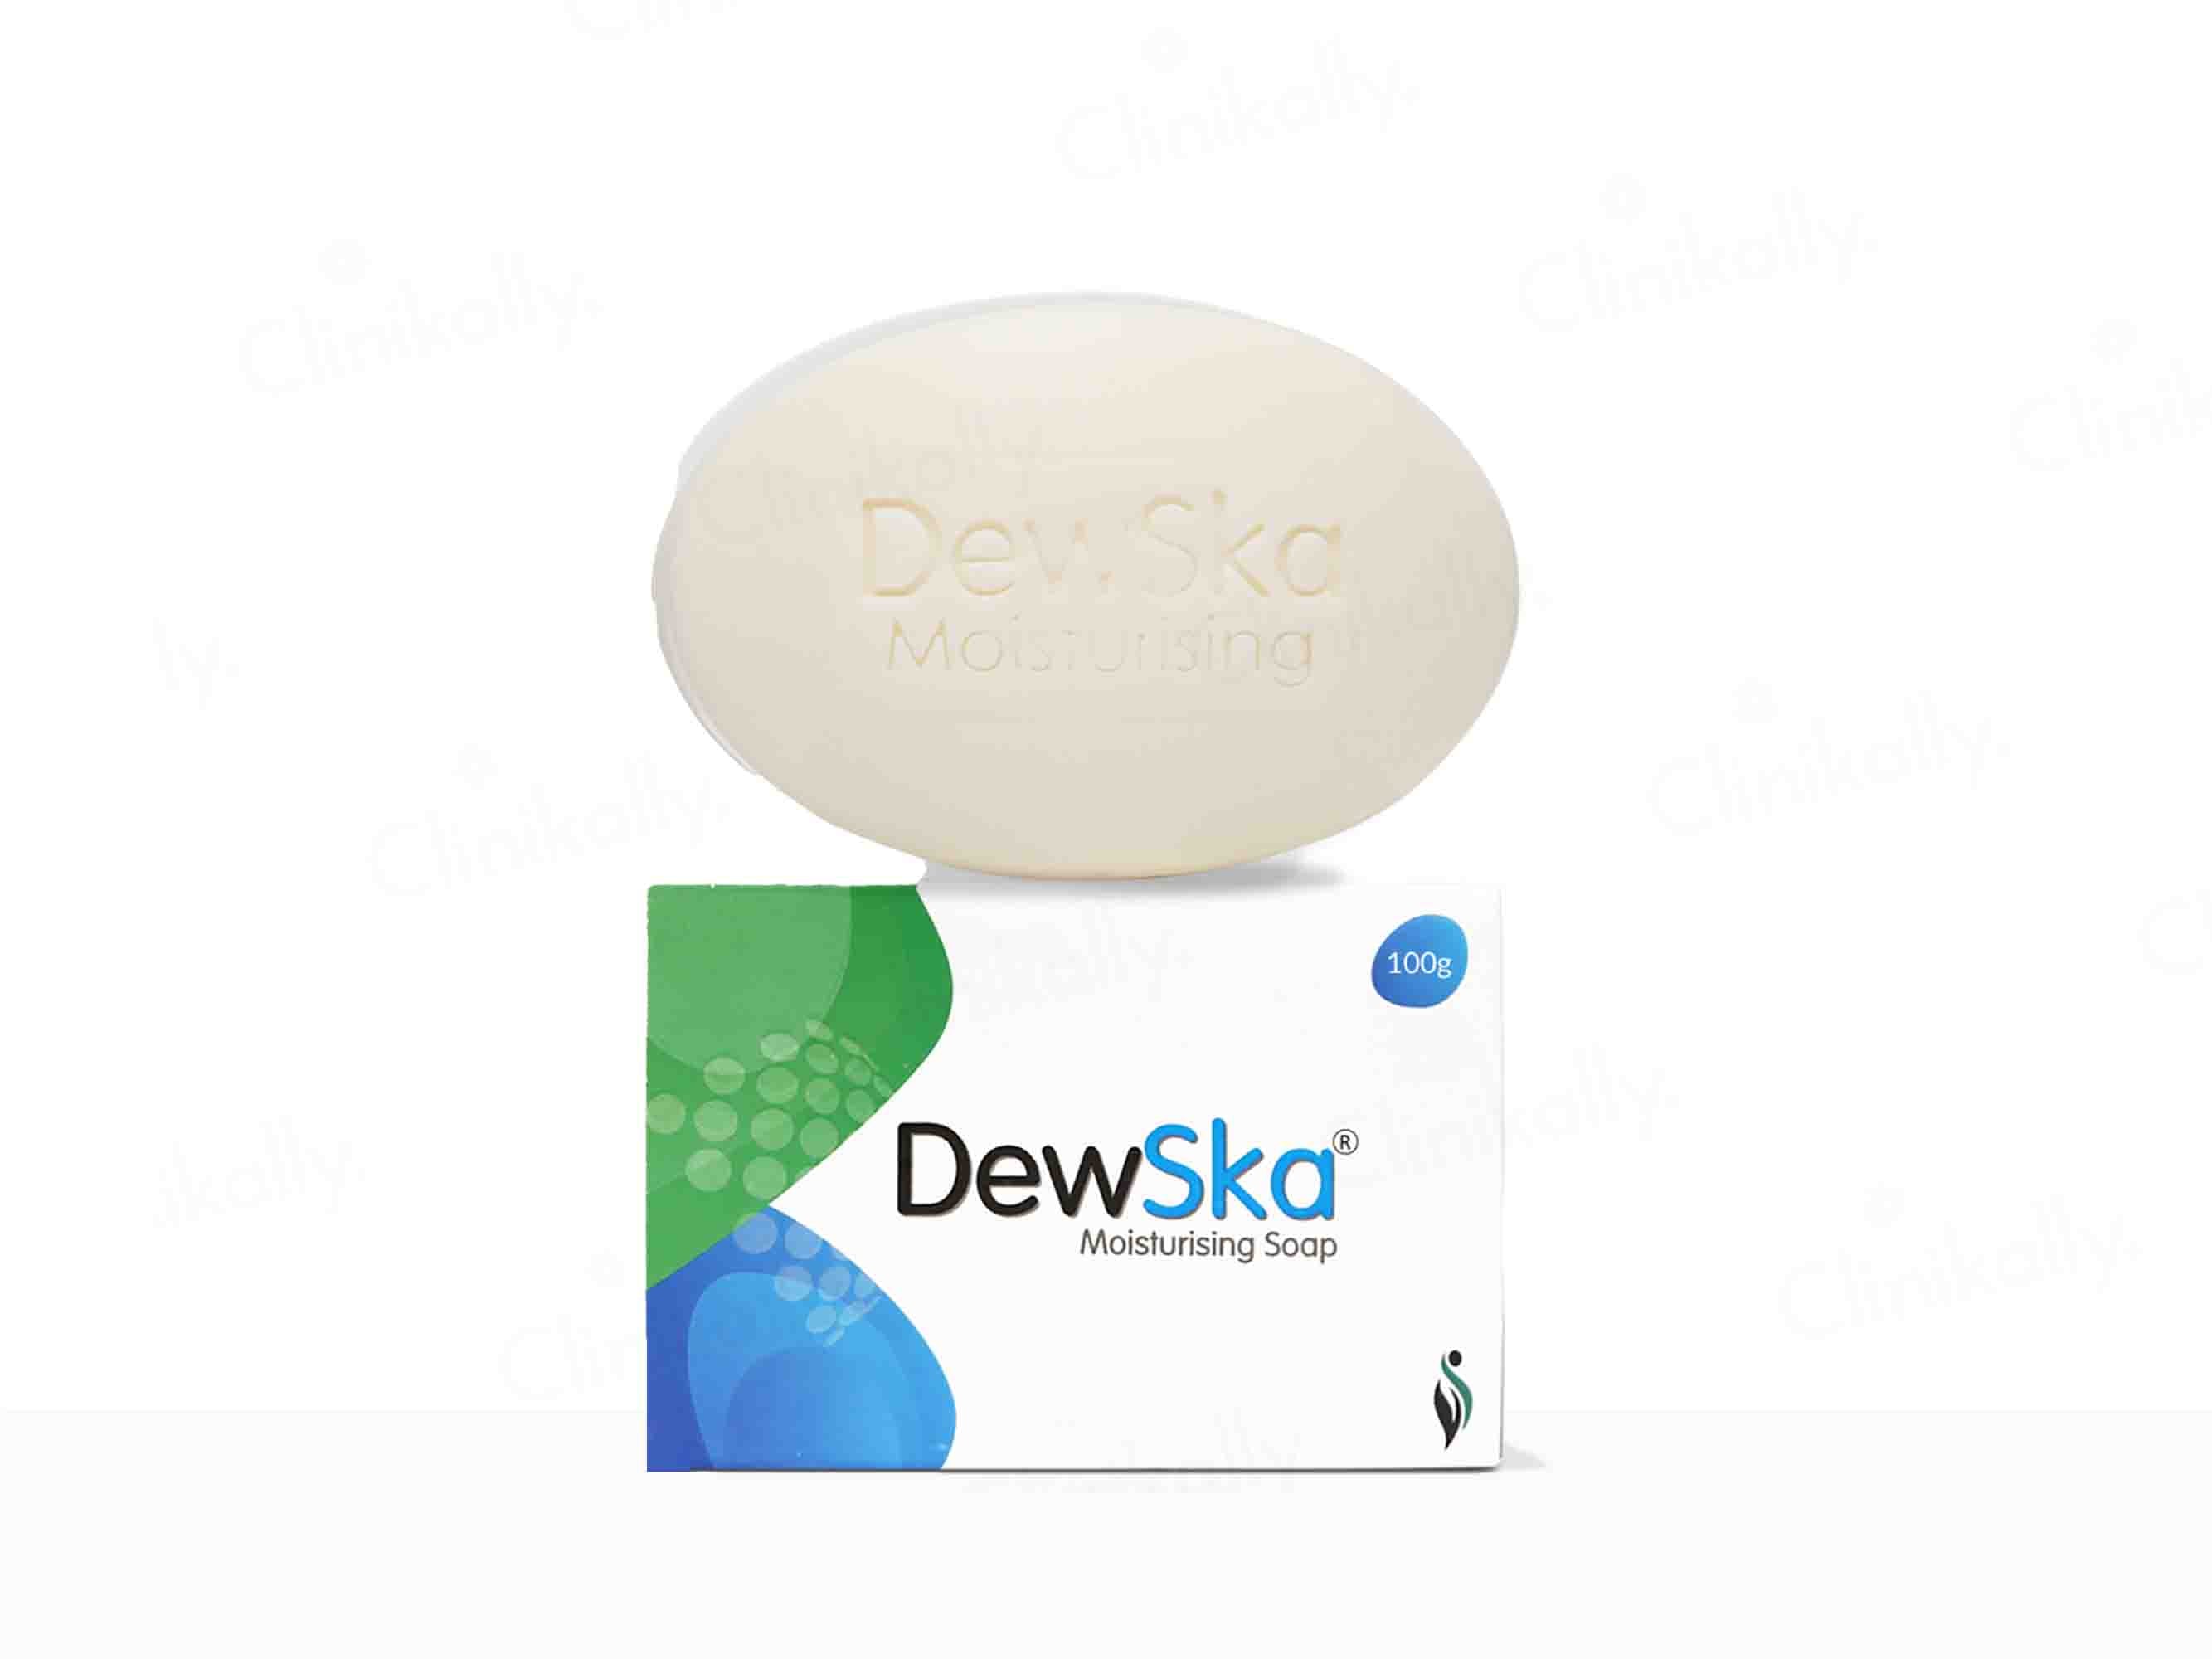 Dewska Moisturising Soap - Clinikally